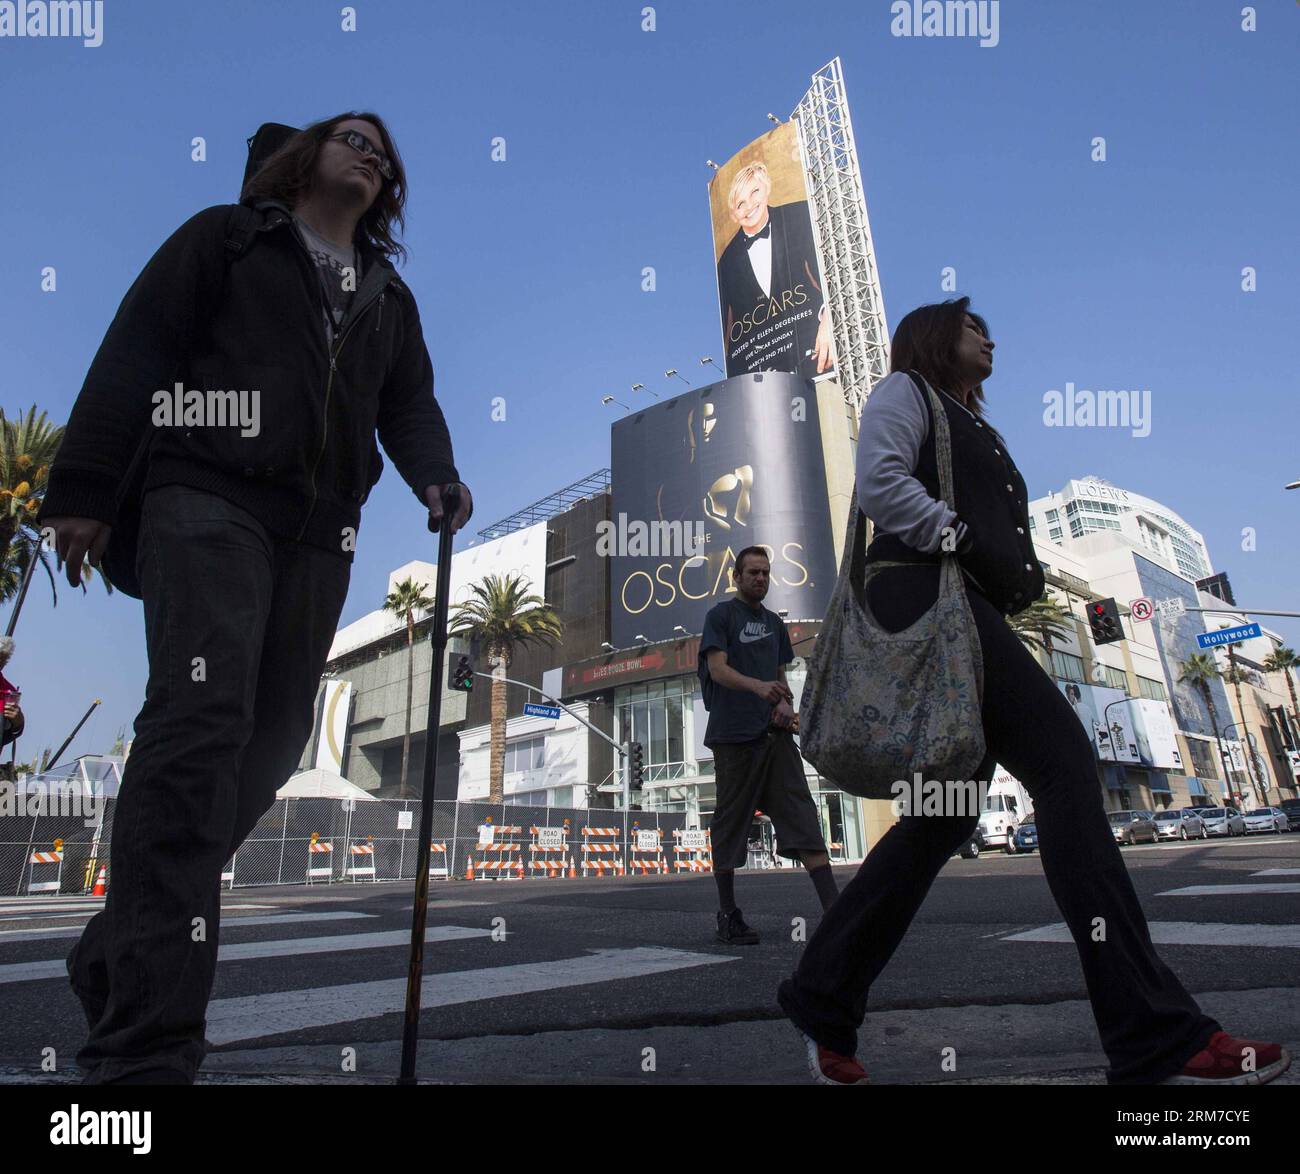 LOS ANGELES, 25 février 2014 (Xinhua) -- les gens passent devant l'affiche des 86e Oscars devant le Dolby Theater à Hollywood à Los Angeles, aux États-Unis, le 25 février 2014. La 86e cérémonie des Oscars aura lieu le 2 mars 2014. (Xinhua/Zhao Hanrong) (zhf) US-LOS ANGELES-OSCAR-PREPARATIONS PUBLICATIONxNOTxINxCHN Los Angeles février 25 2014 les célébrités de XINHUA passent devant l'affiche de la 86e cérémonie des Oscars devant le Dolby Theatre à Hollywood de Los Angeles les États-Unis février 25 2014 la 86e cérémonie des Oscars sera Hero LE 2 2014 mars XINHUA Zhao U.S. Lo Banque D'Images